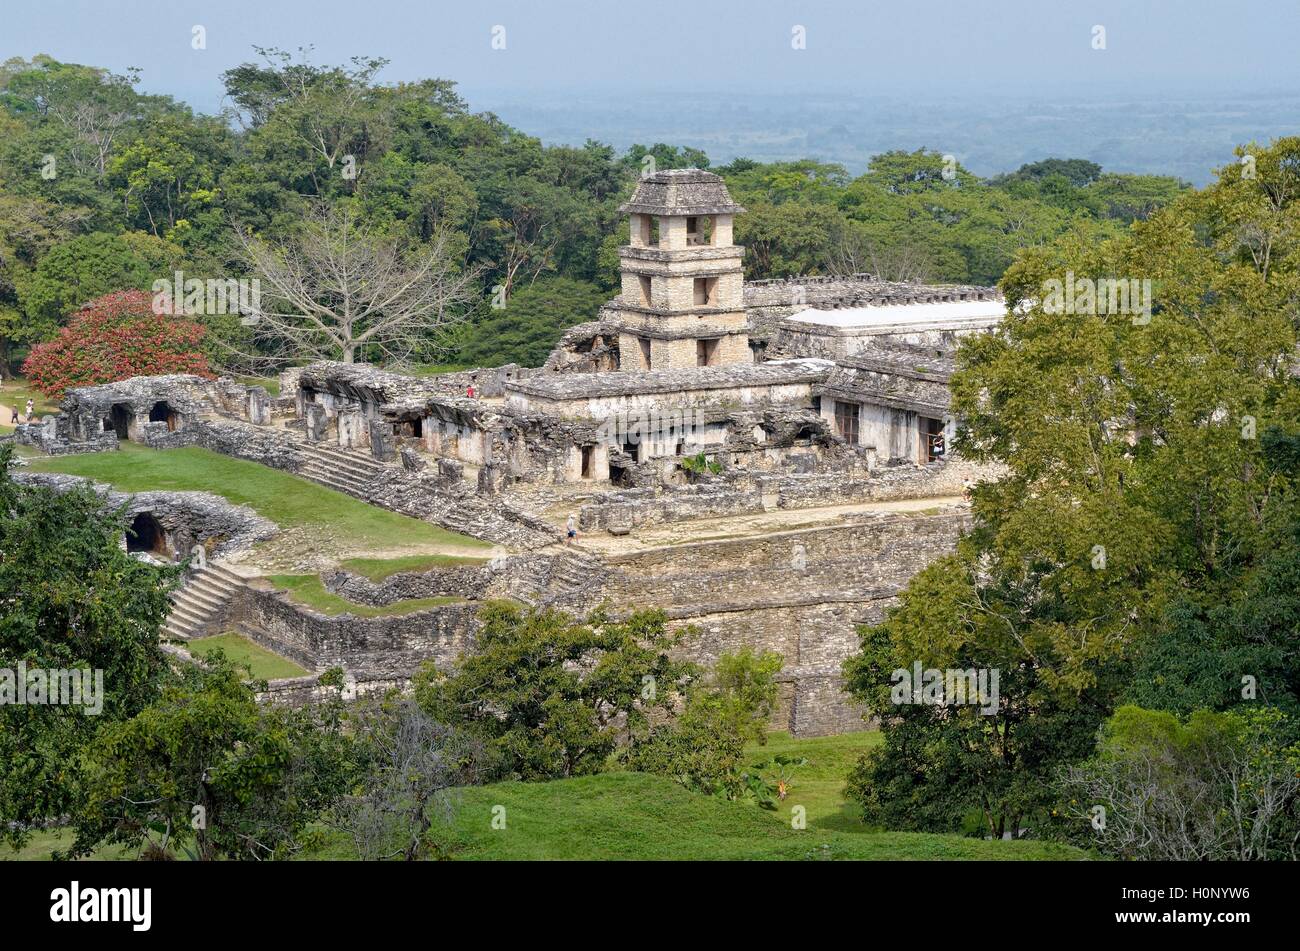 Palace El Palacio, ruines Maya de Palenque, Palenque, Chiapas, Mexique Banque D'Images